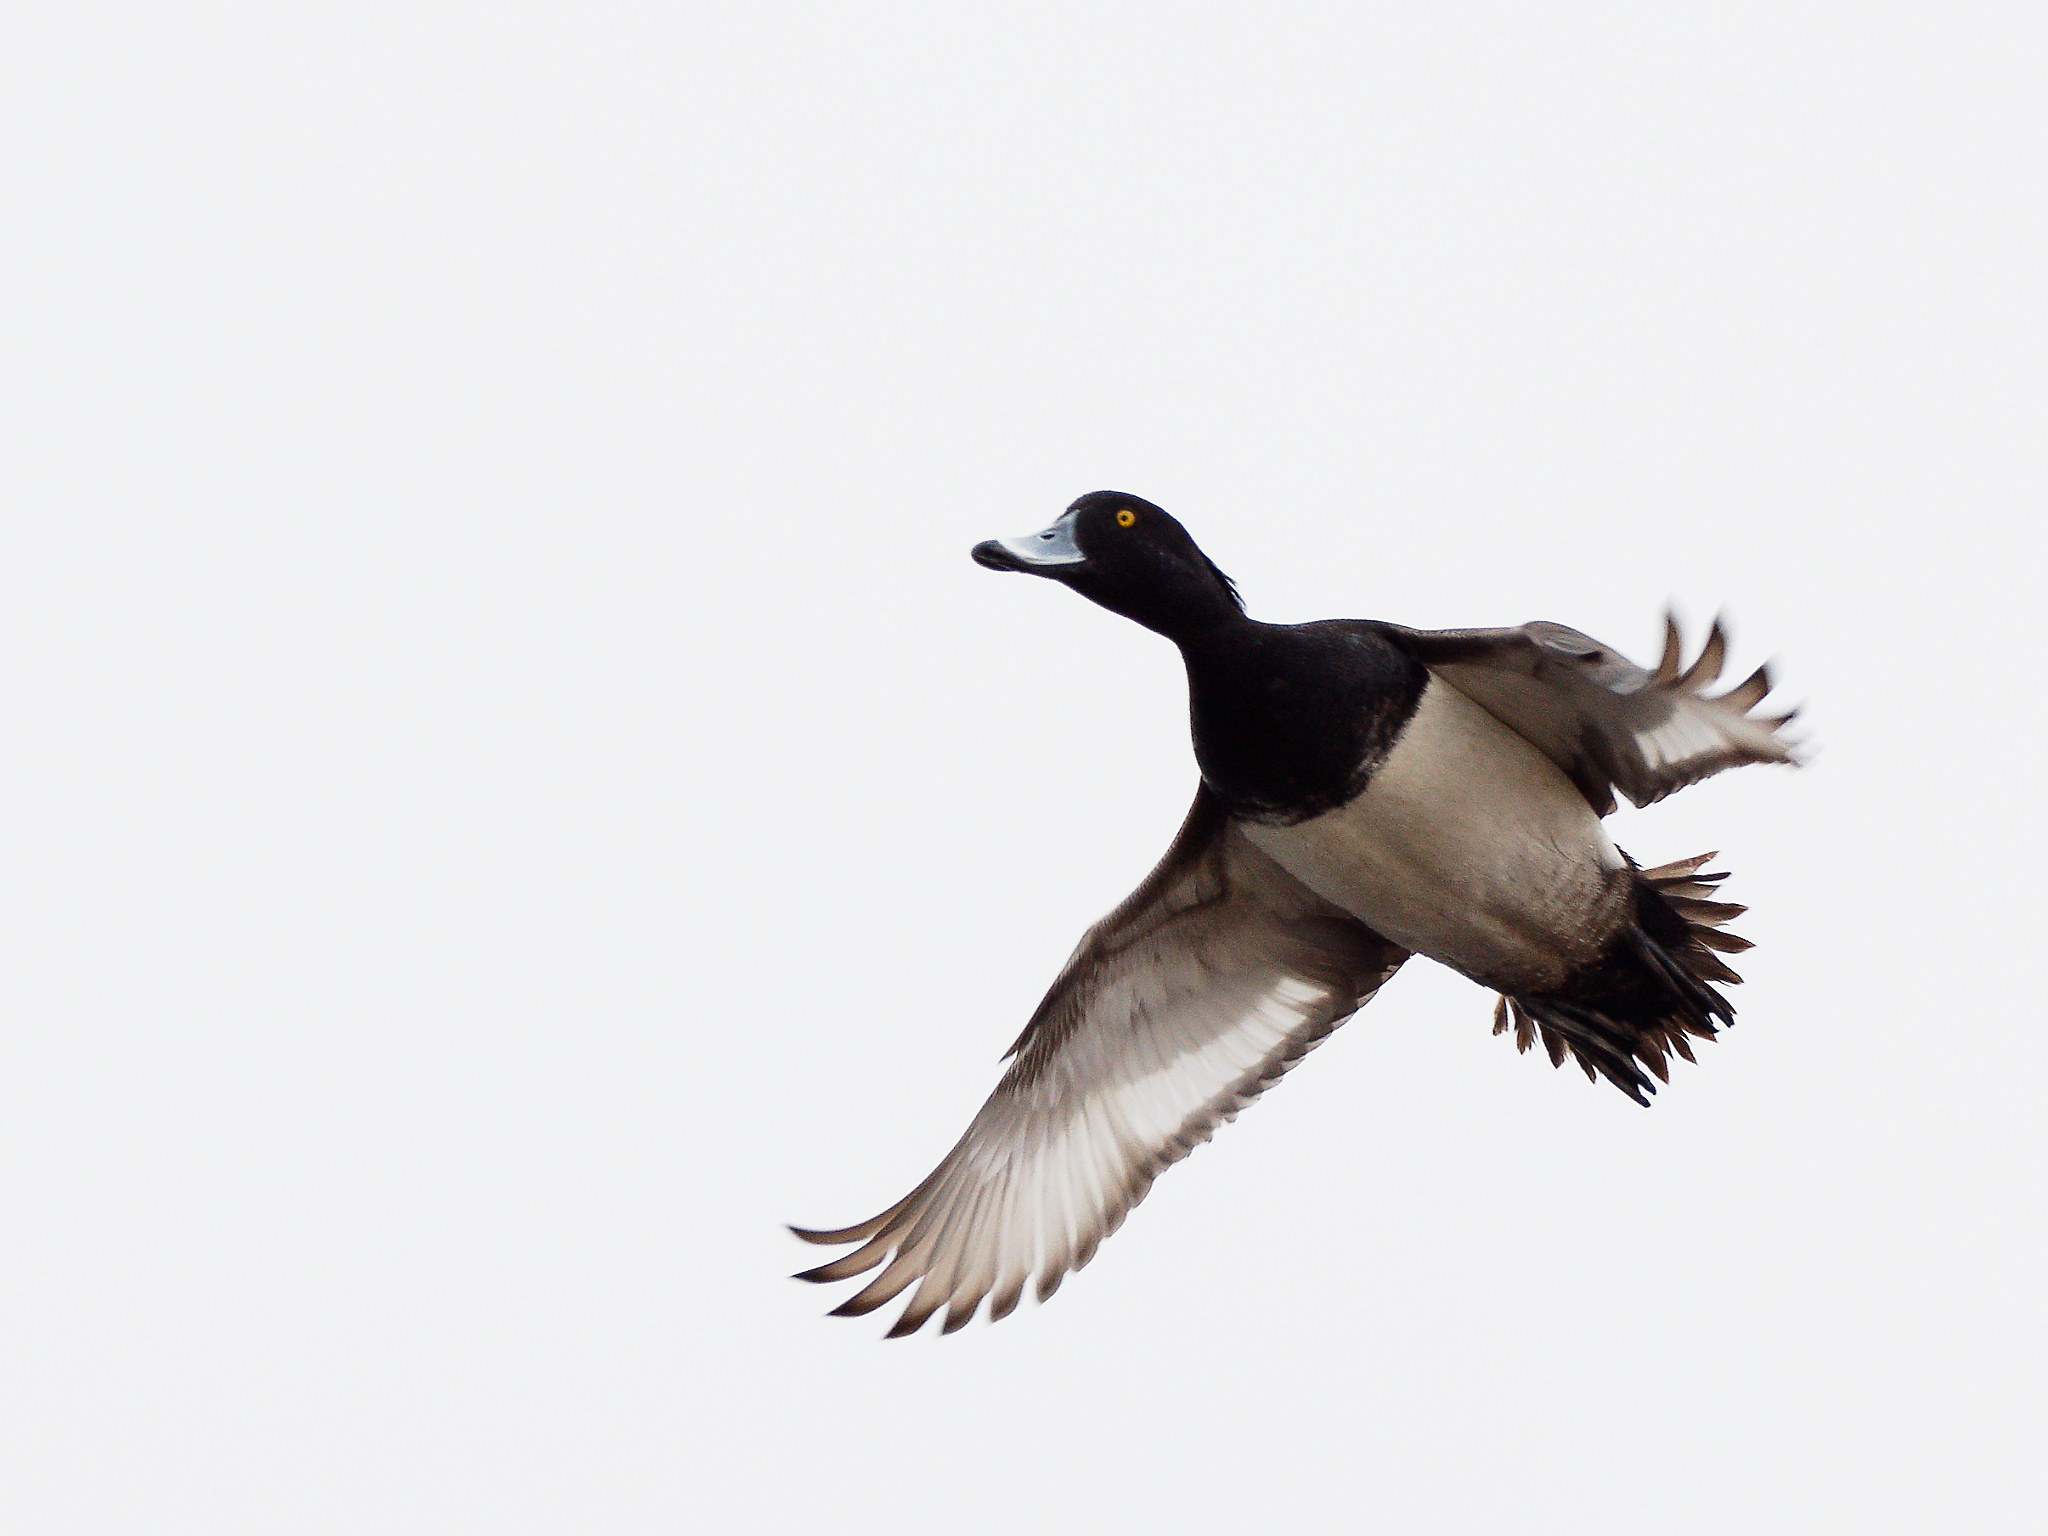 Male tufted duck in flight